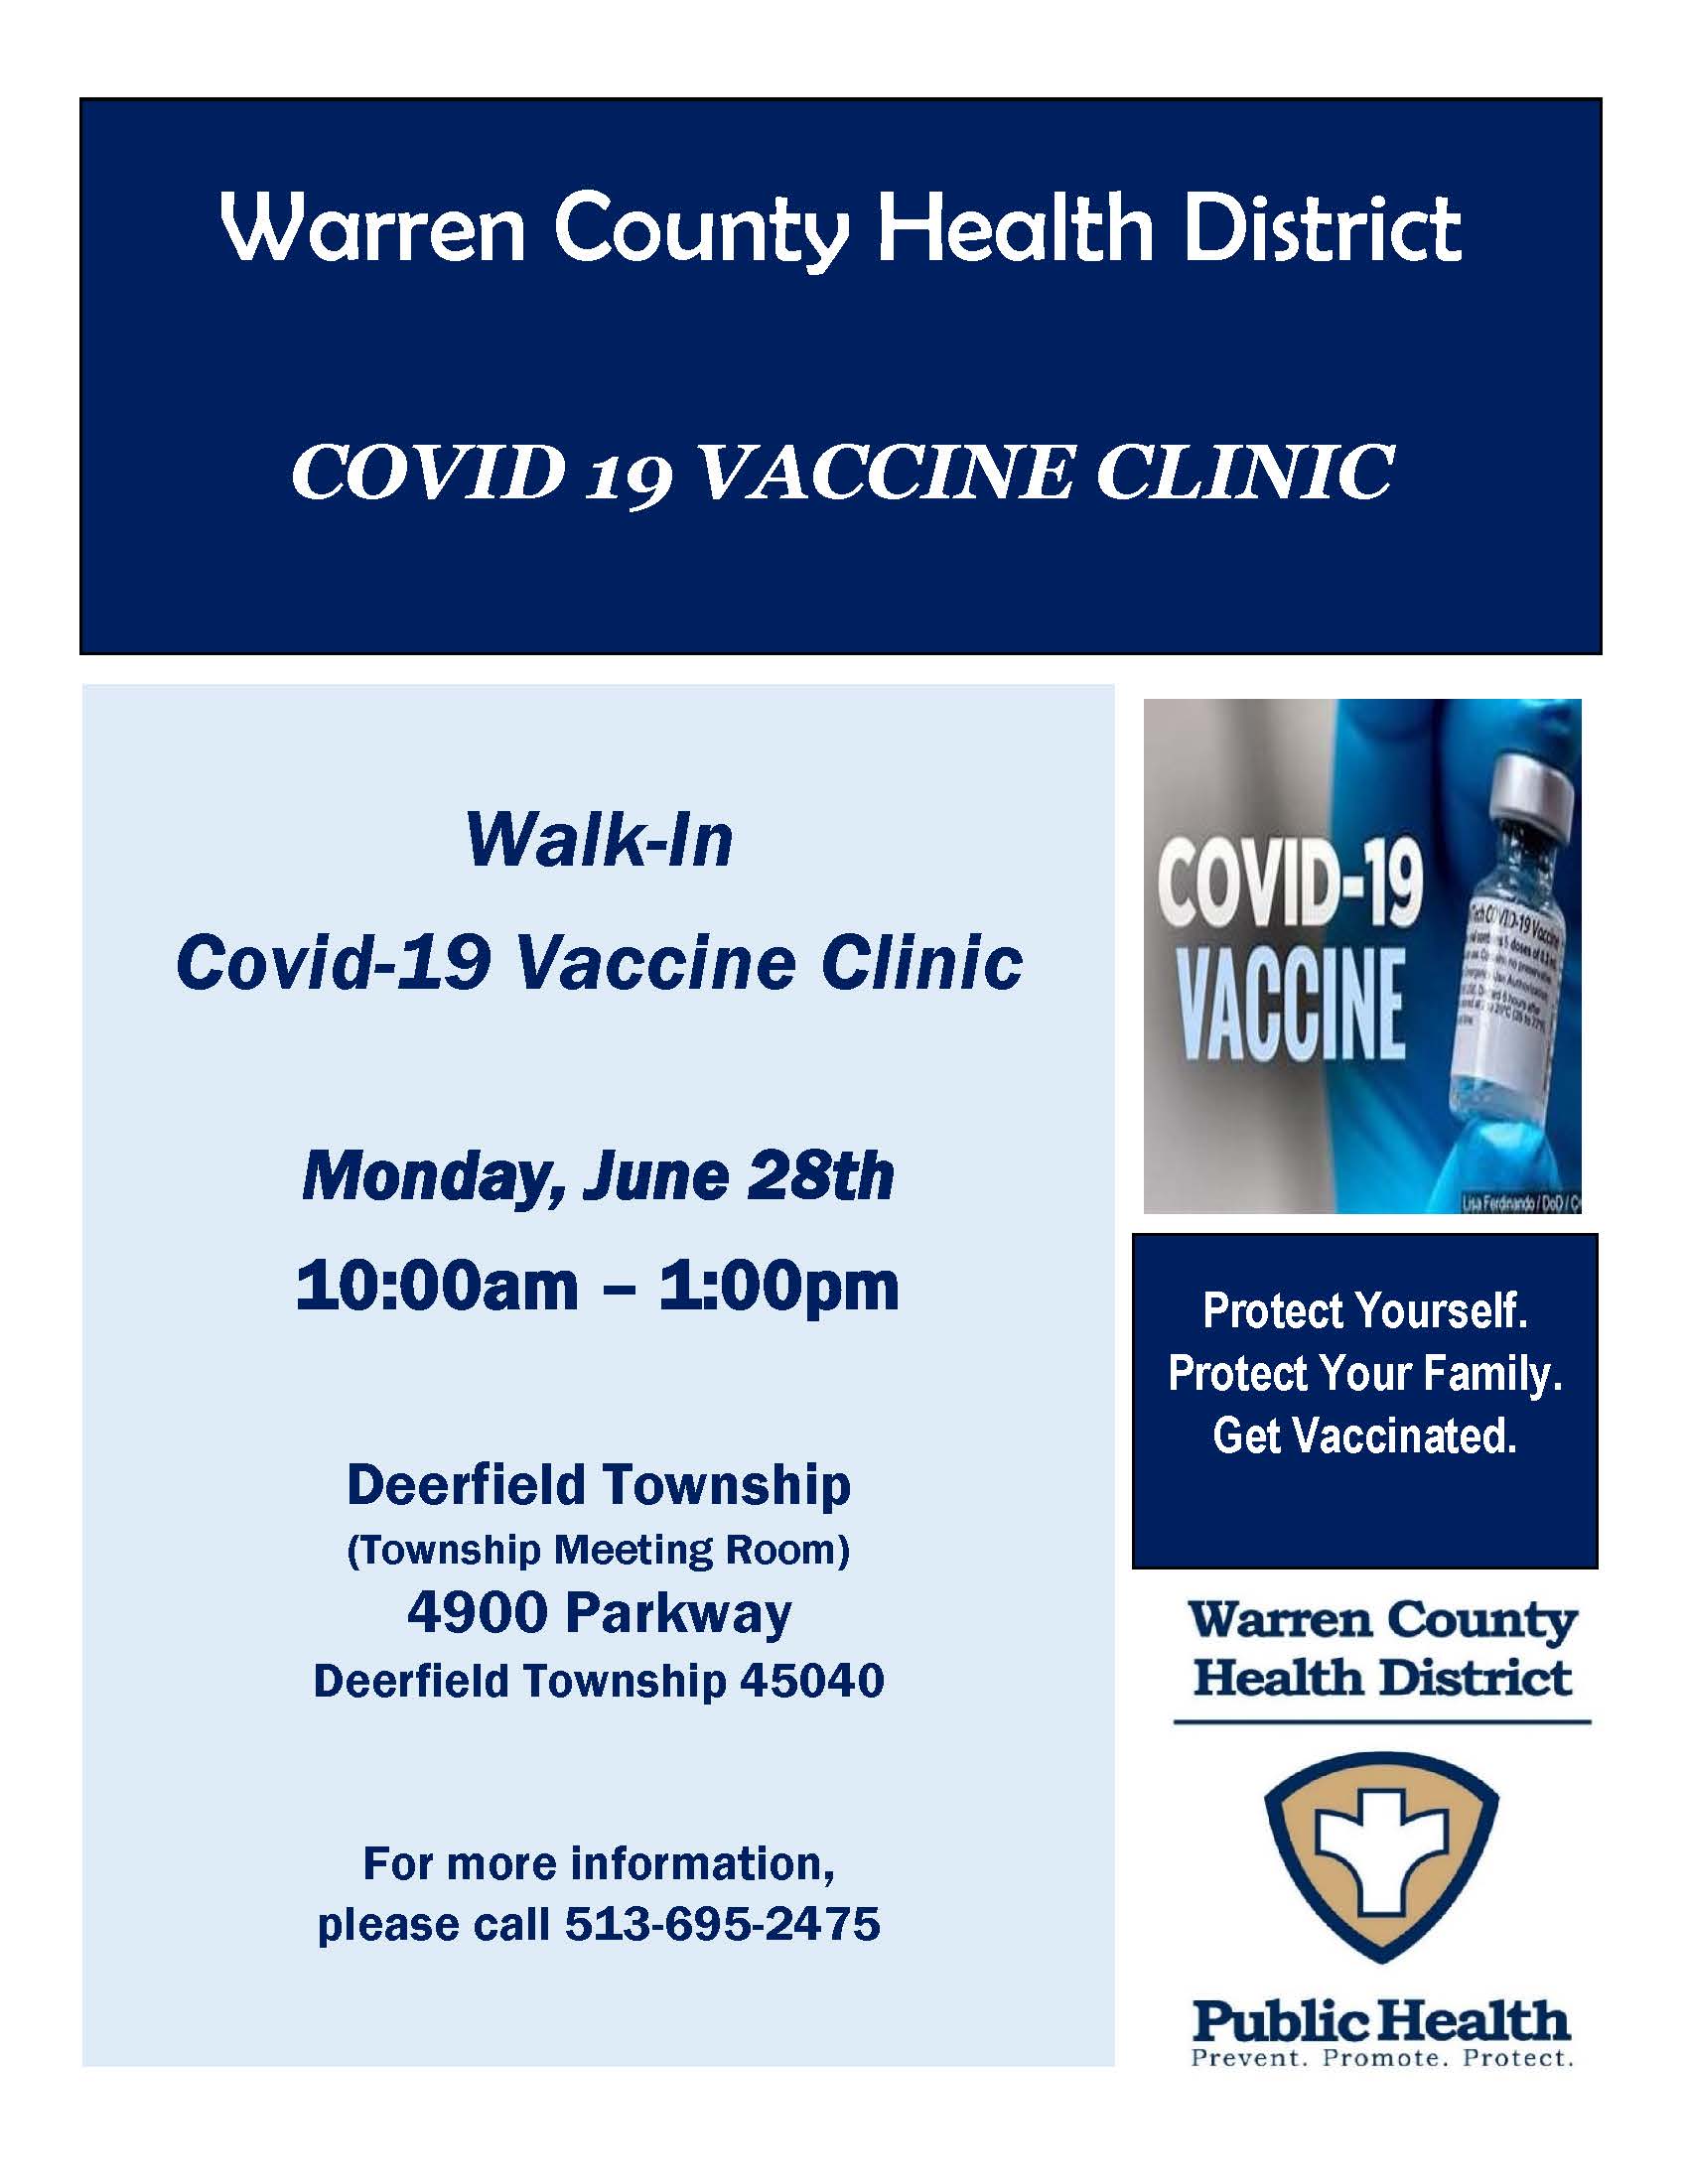 Warren County Health District COVID-19 Vaccine Clinic